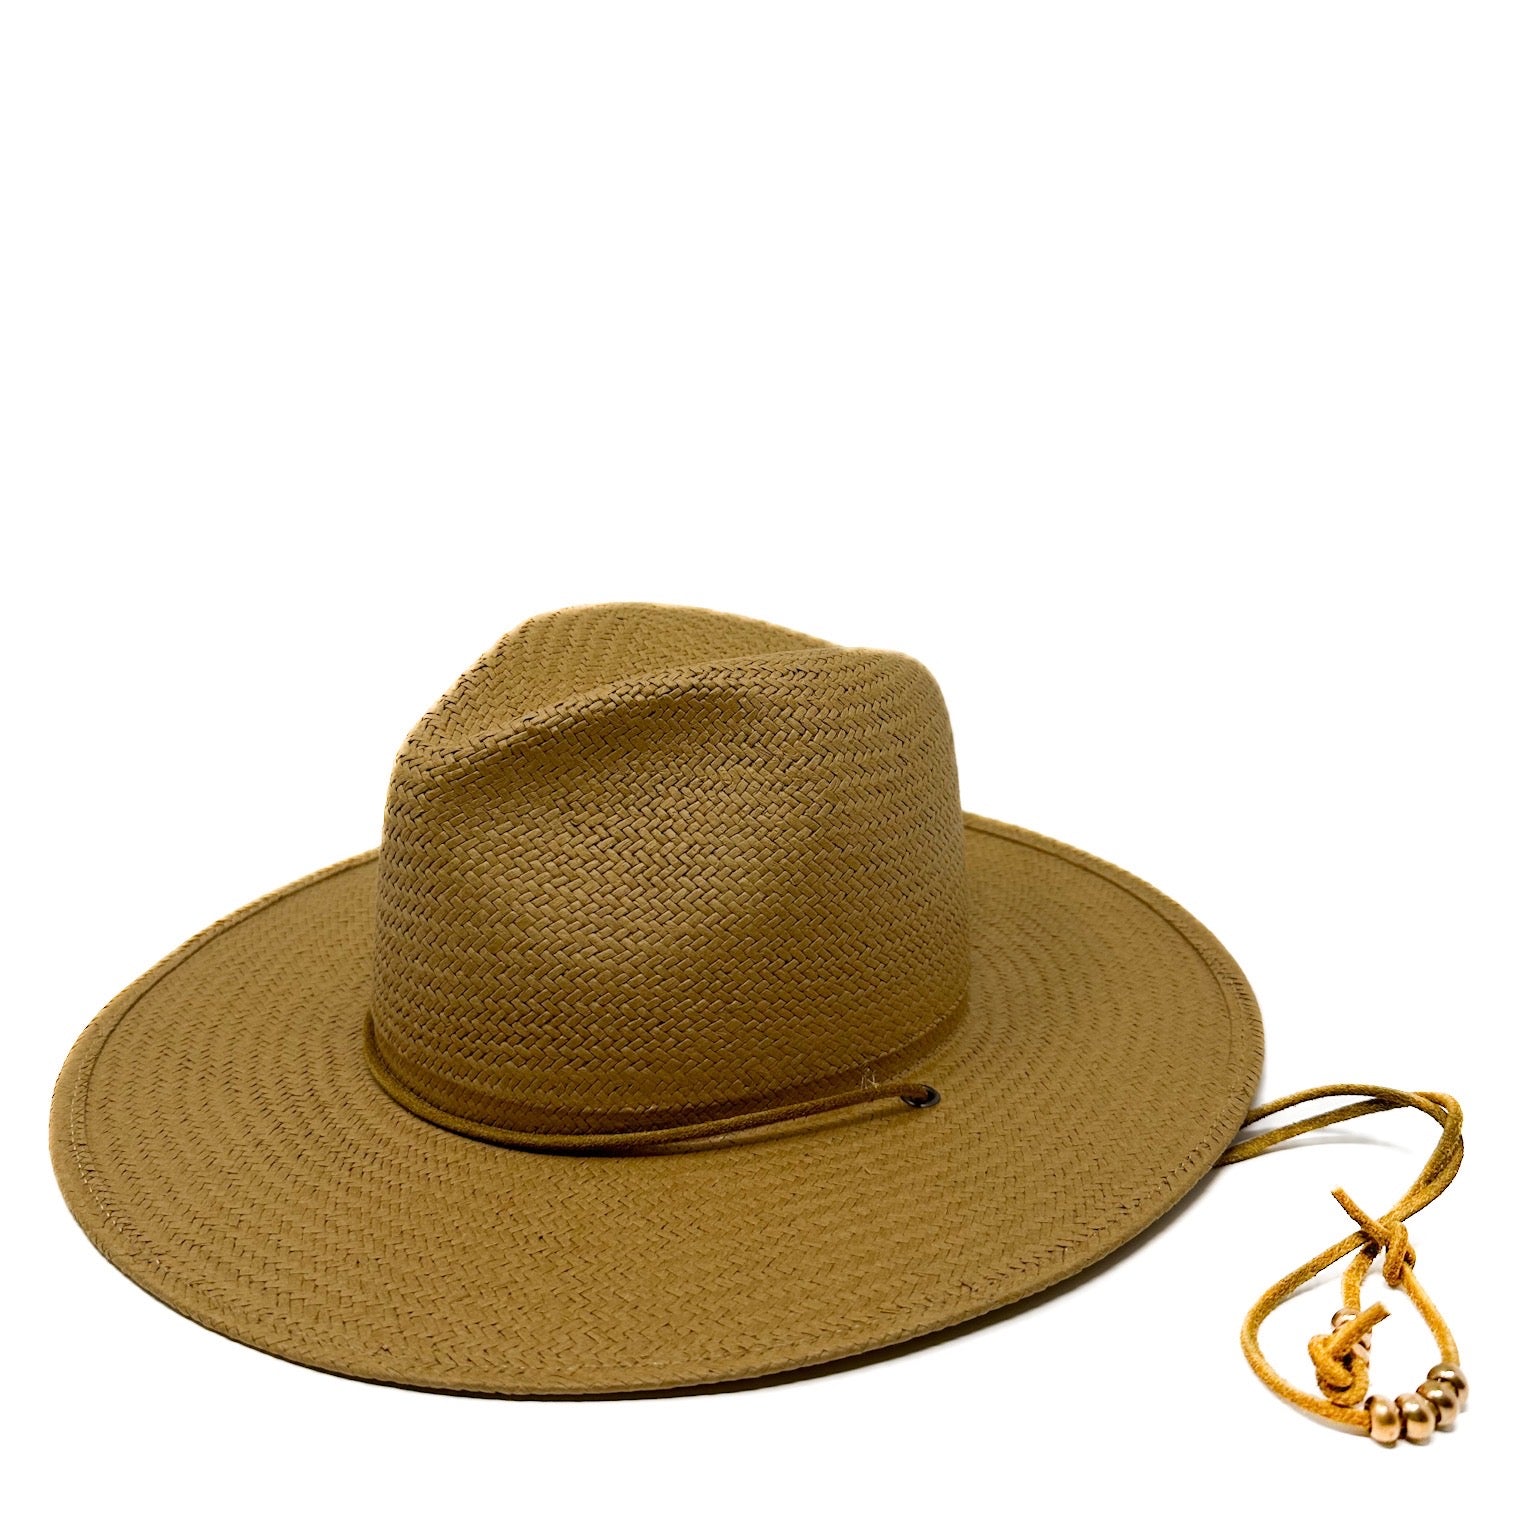 SEDONA Packable Straw Hat w/ neck tie in Bronze - Lovely Bird